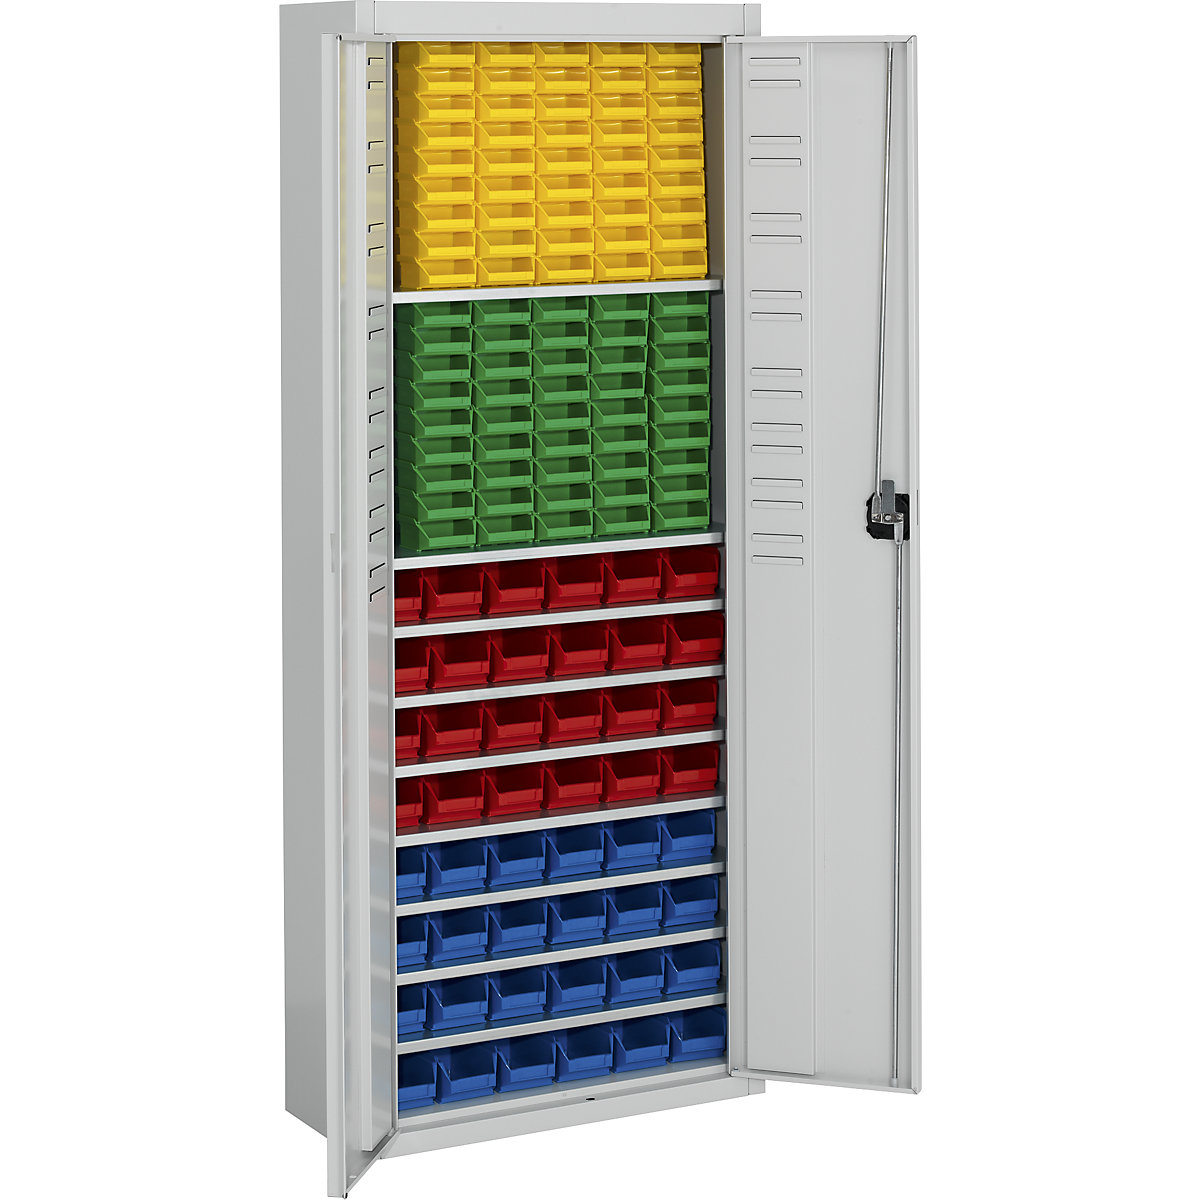 Skladiščna omara z odprtimi skladiščnimi posodami – mauser, VxŠxG 1740 x 680 x 280 mm, ena barva, siva, 138 posod-16